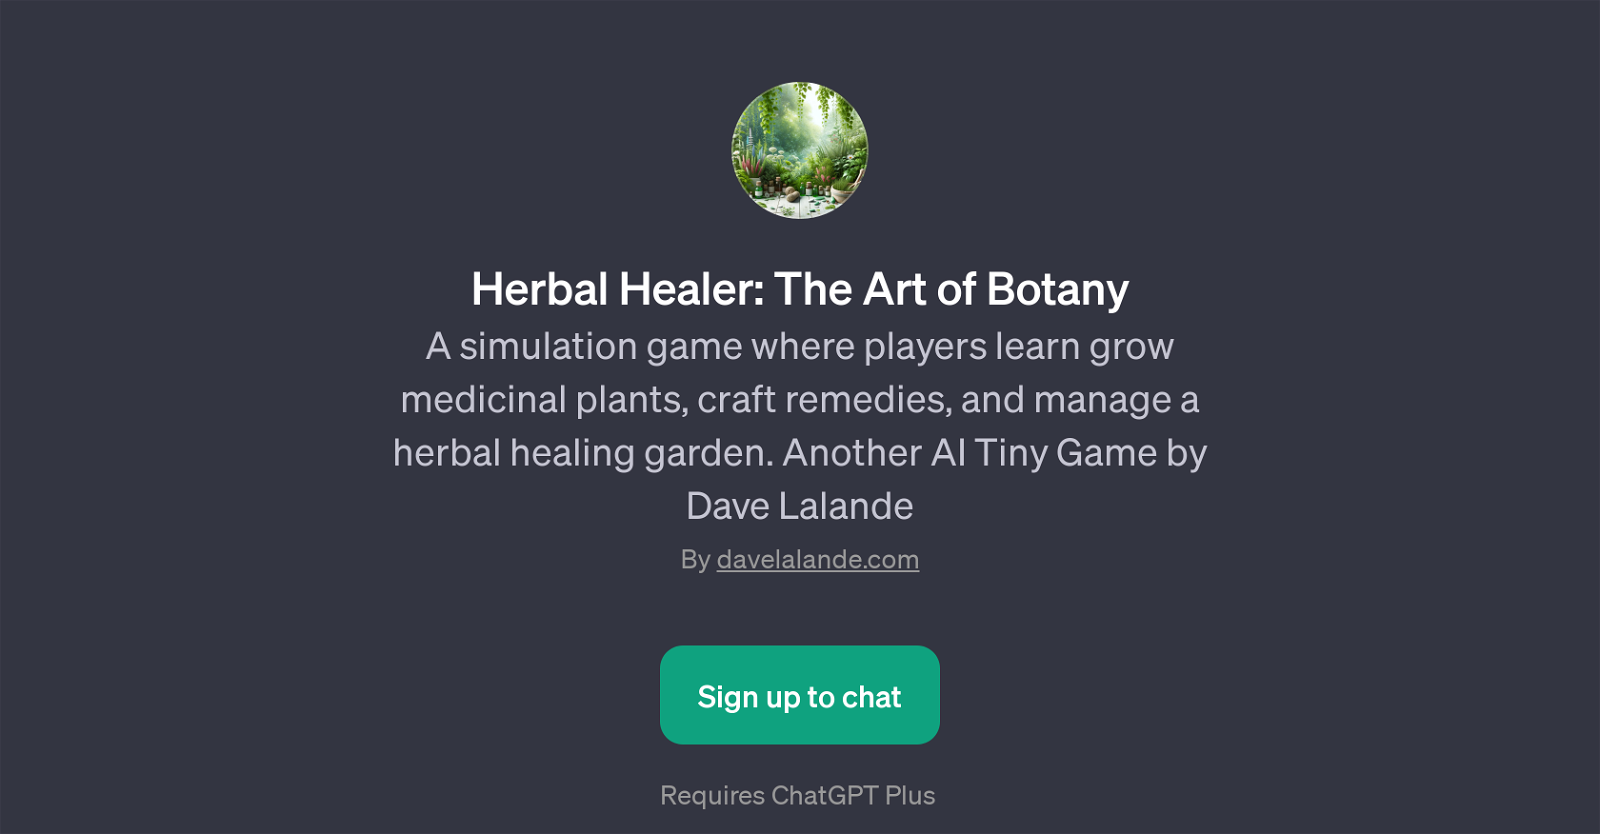 Herbal Healer: The Art of Botany website